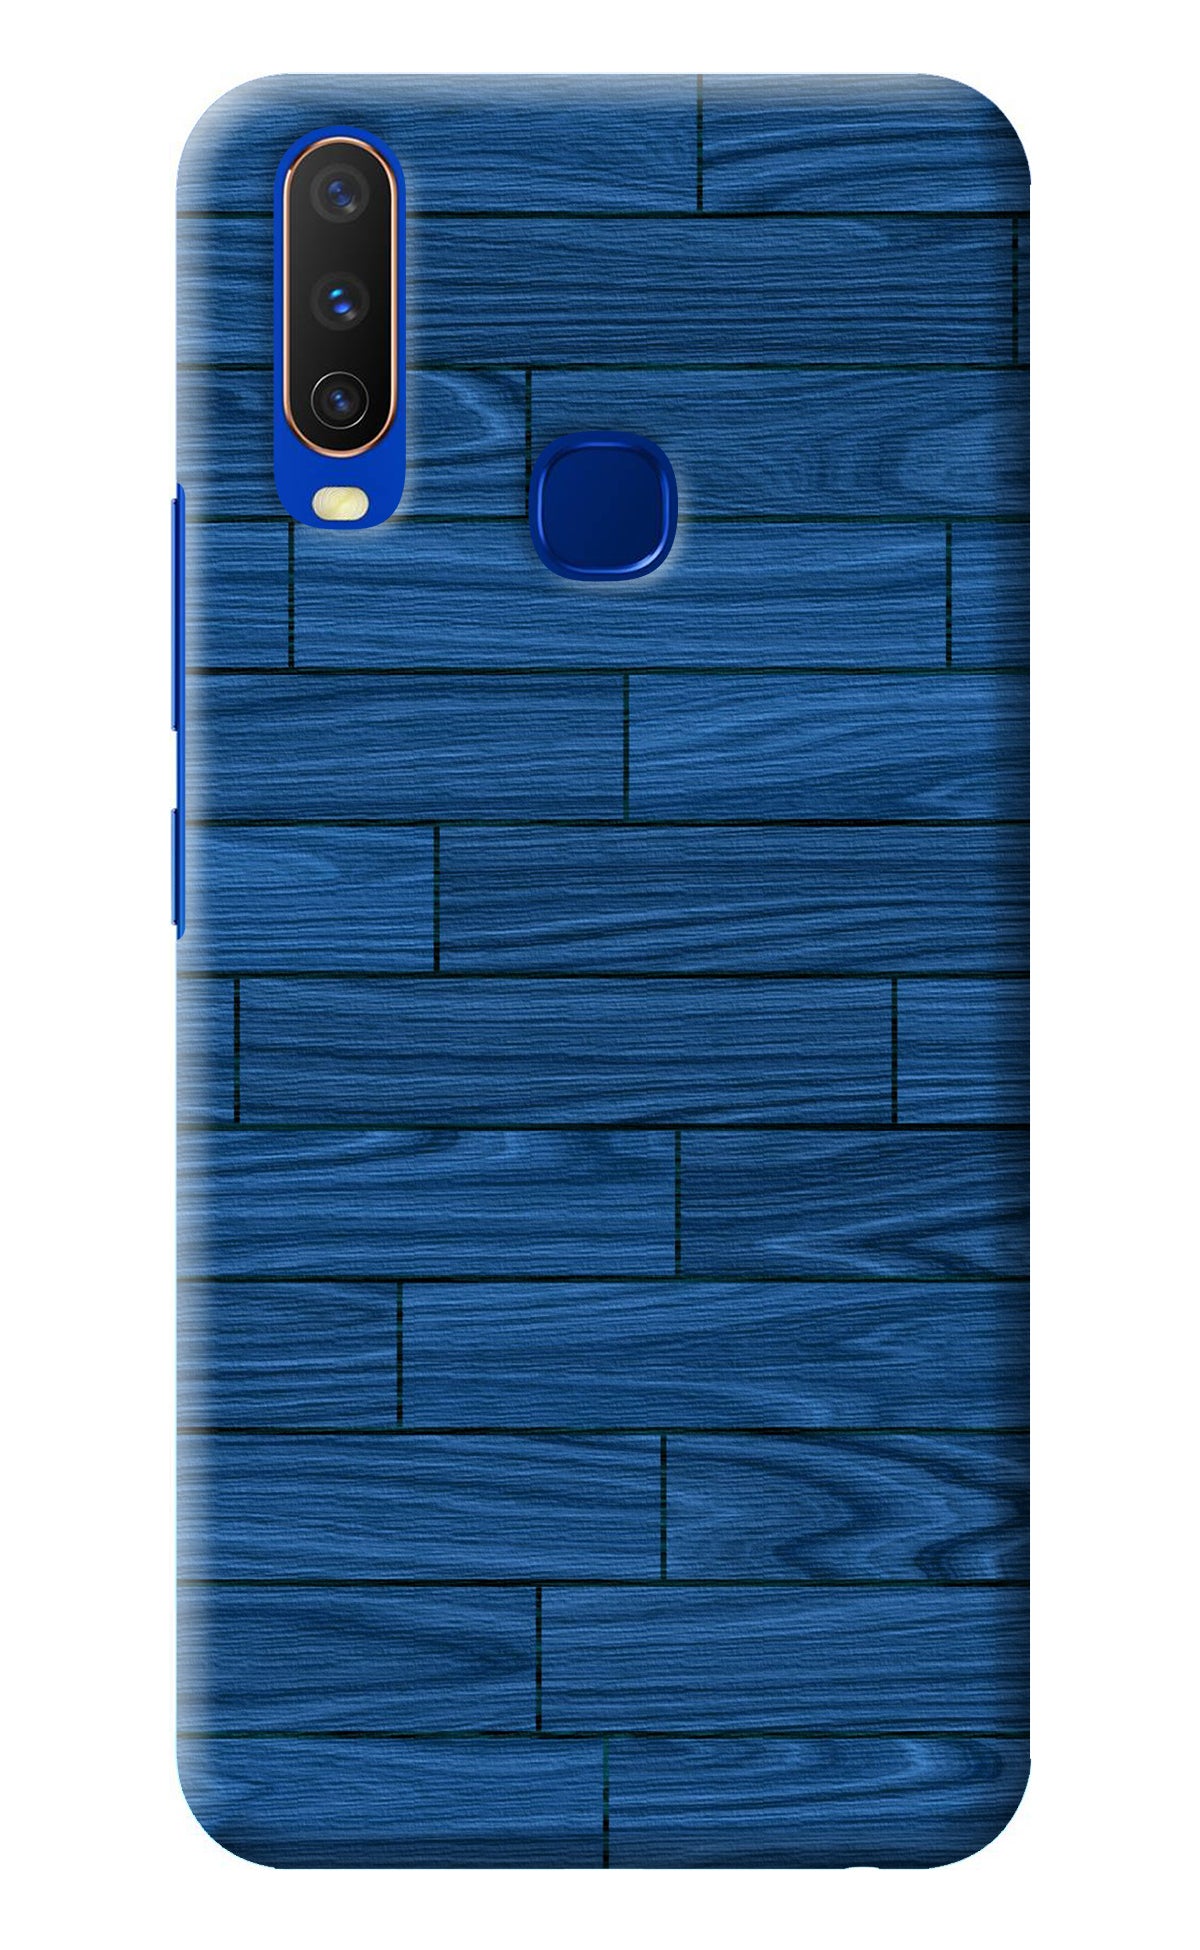 Wooden Texture Vivo Y15/Y17 Back Cover